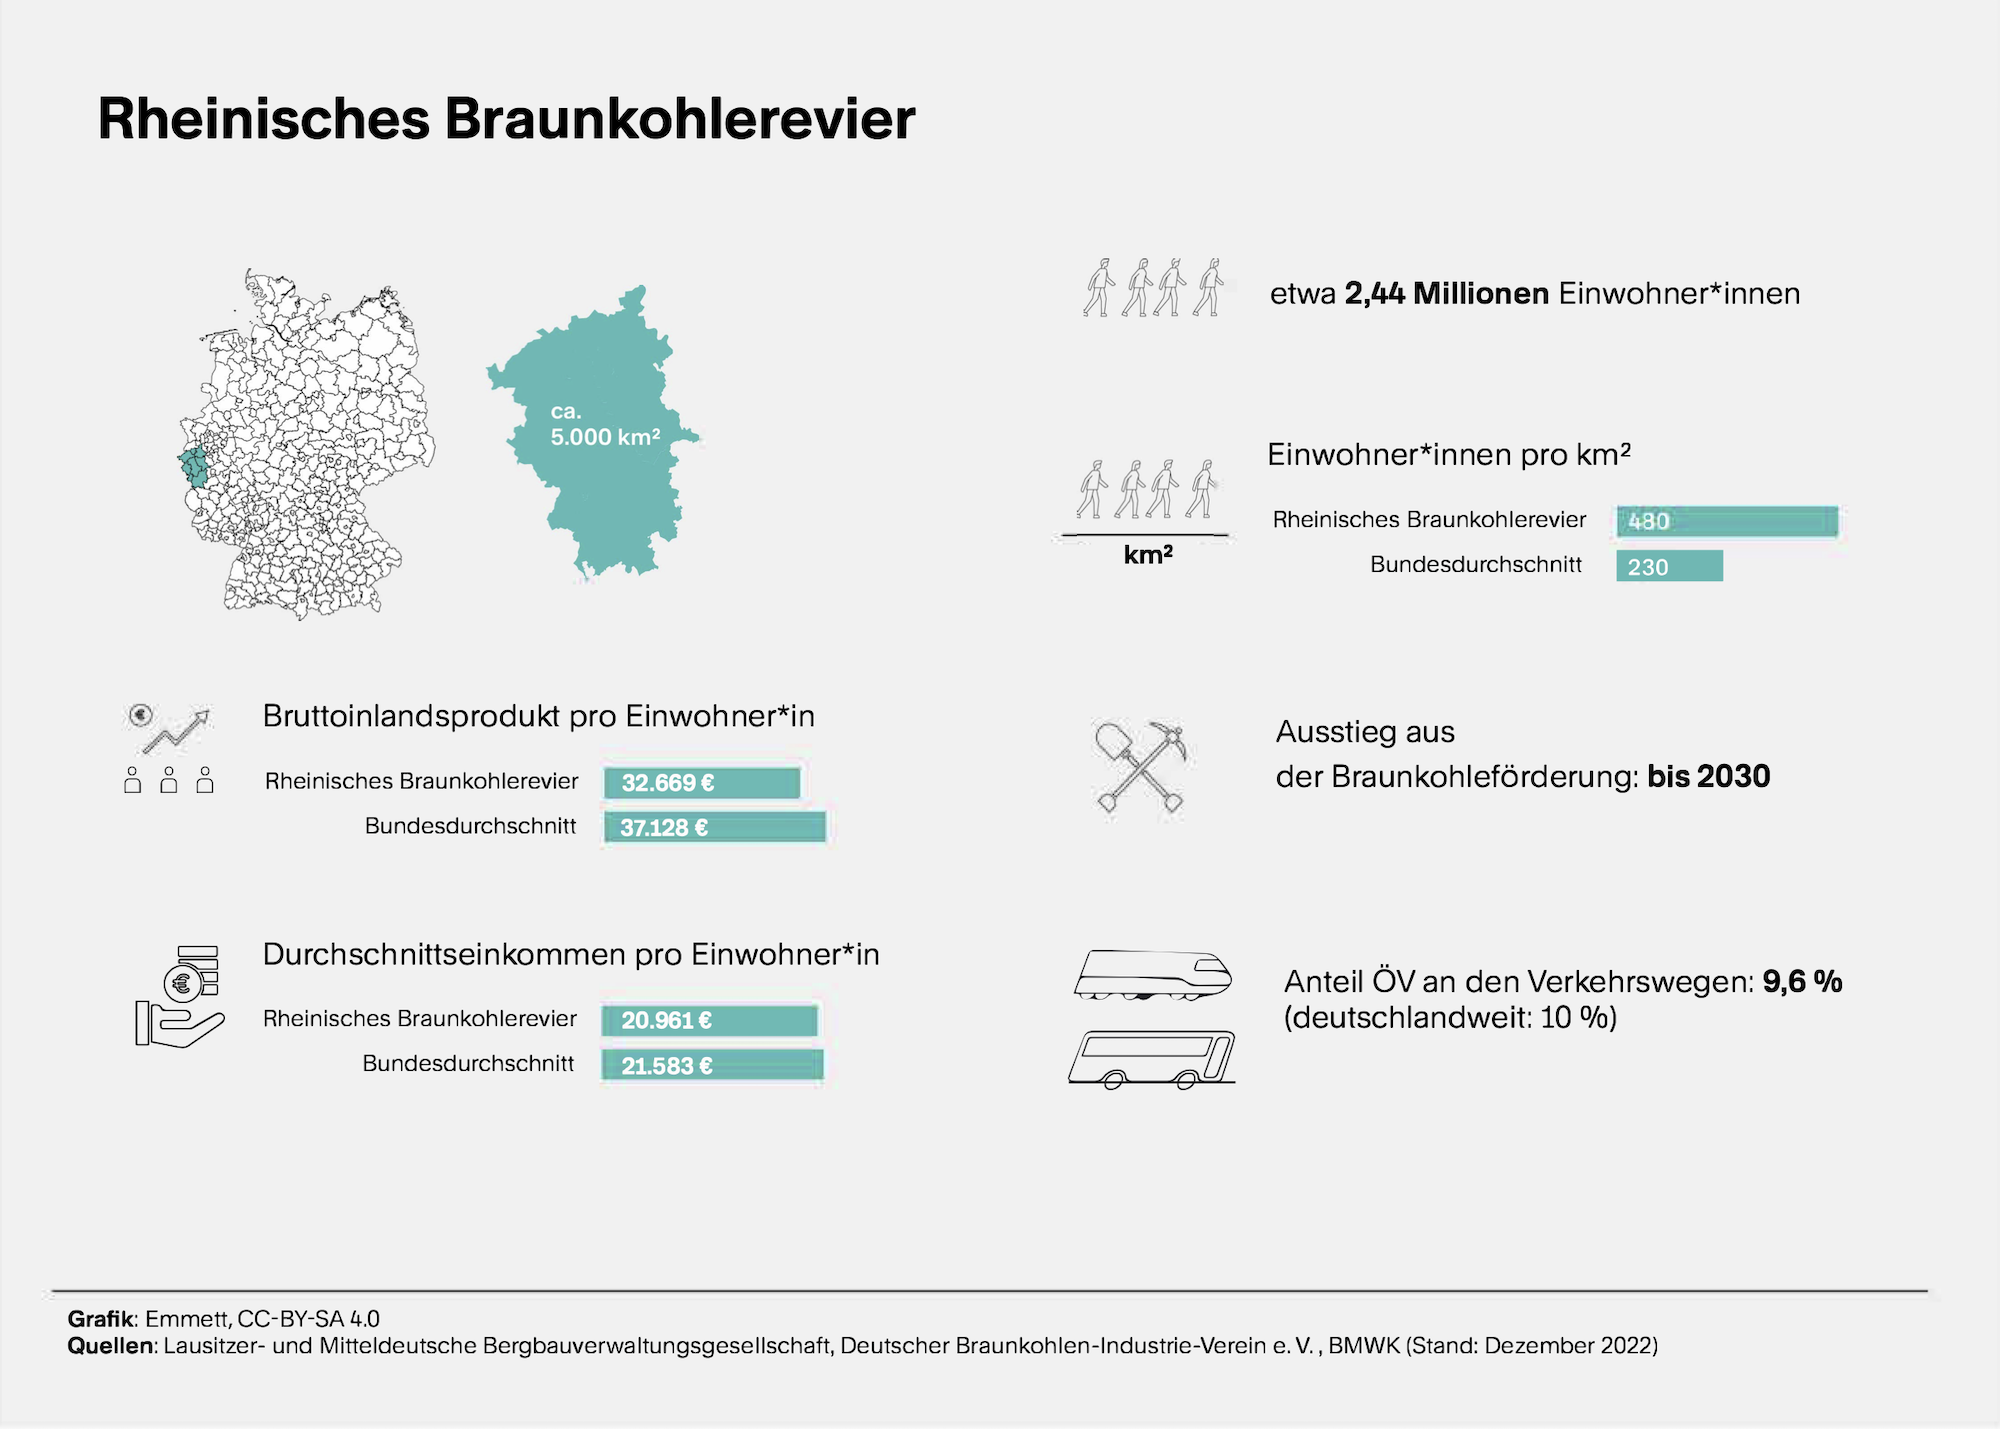 Mehrere kleine Grafiken plus Text. Sie informieren über demographische Daten zum Rheinischen Braunkohlerevier, auch zum Anteil des öffentlichen Verkehrs an den Verkehrswegen in dem Gebiet